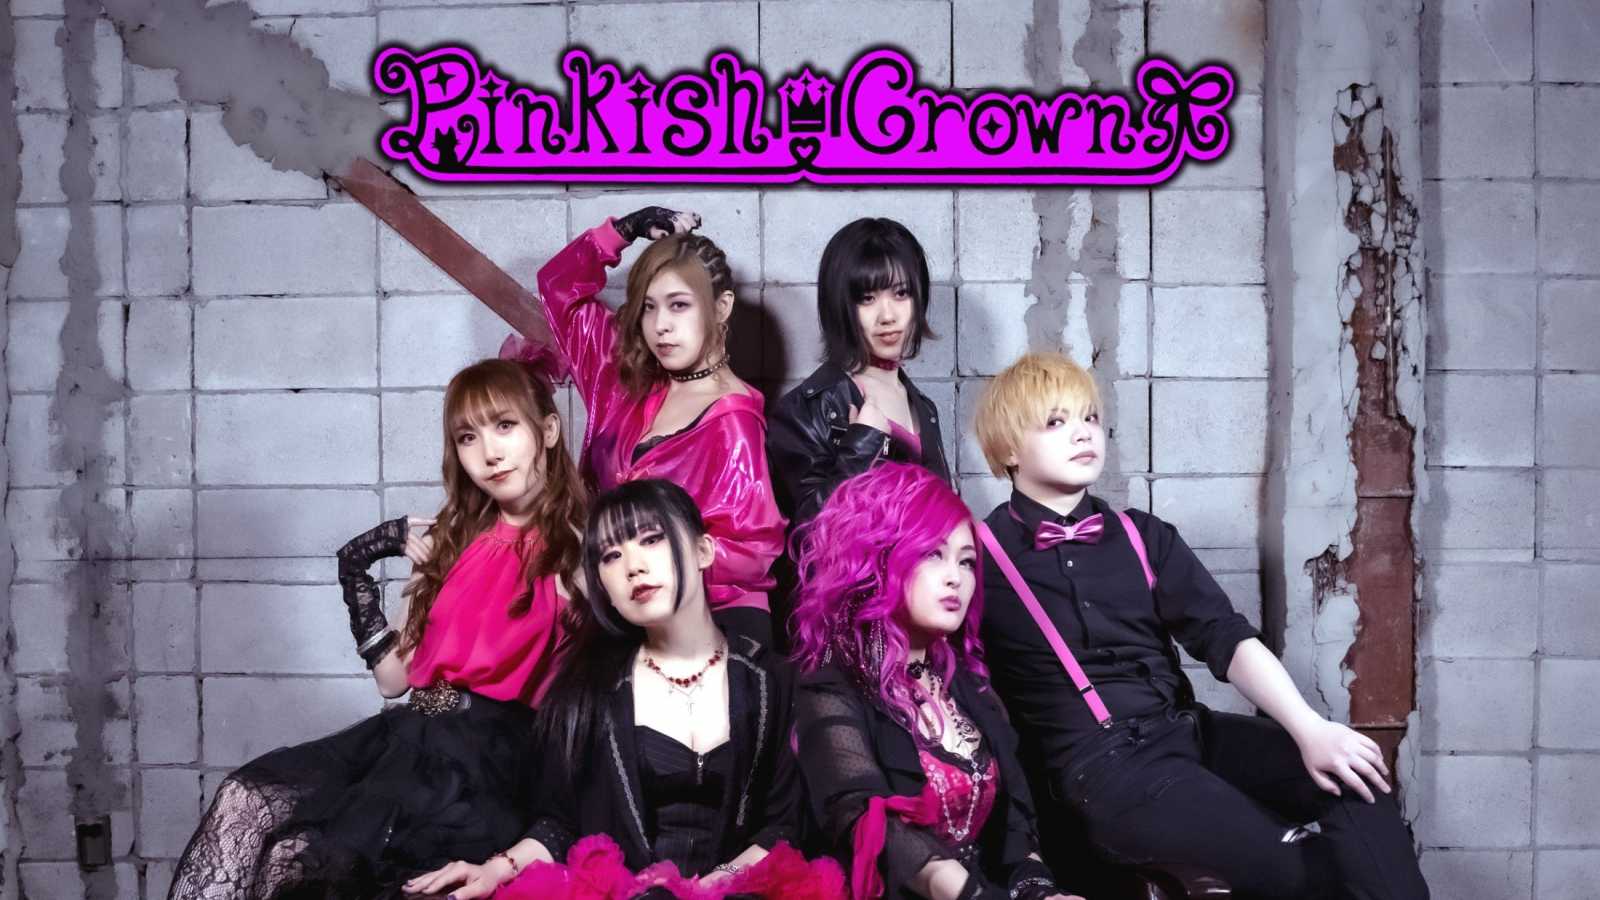 Neues Album von Pinkish Crown © Pinkish Crown. All Rights Reserved.